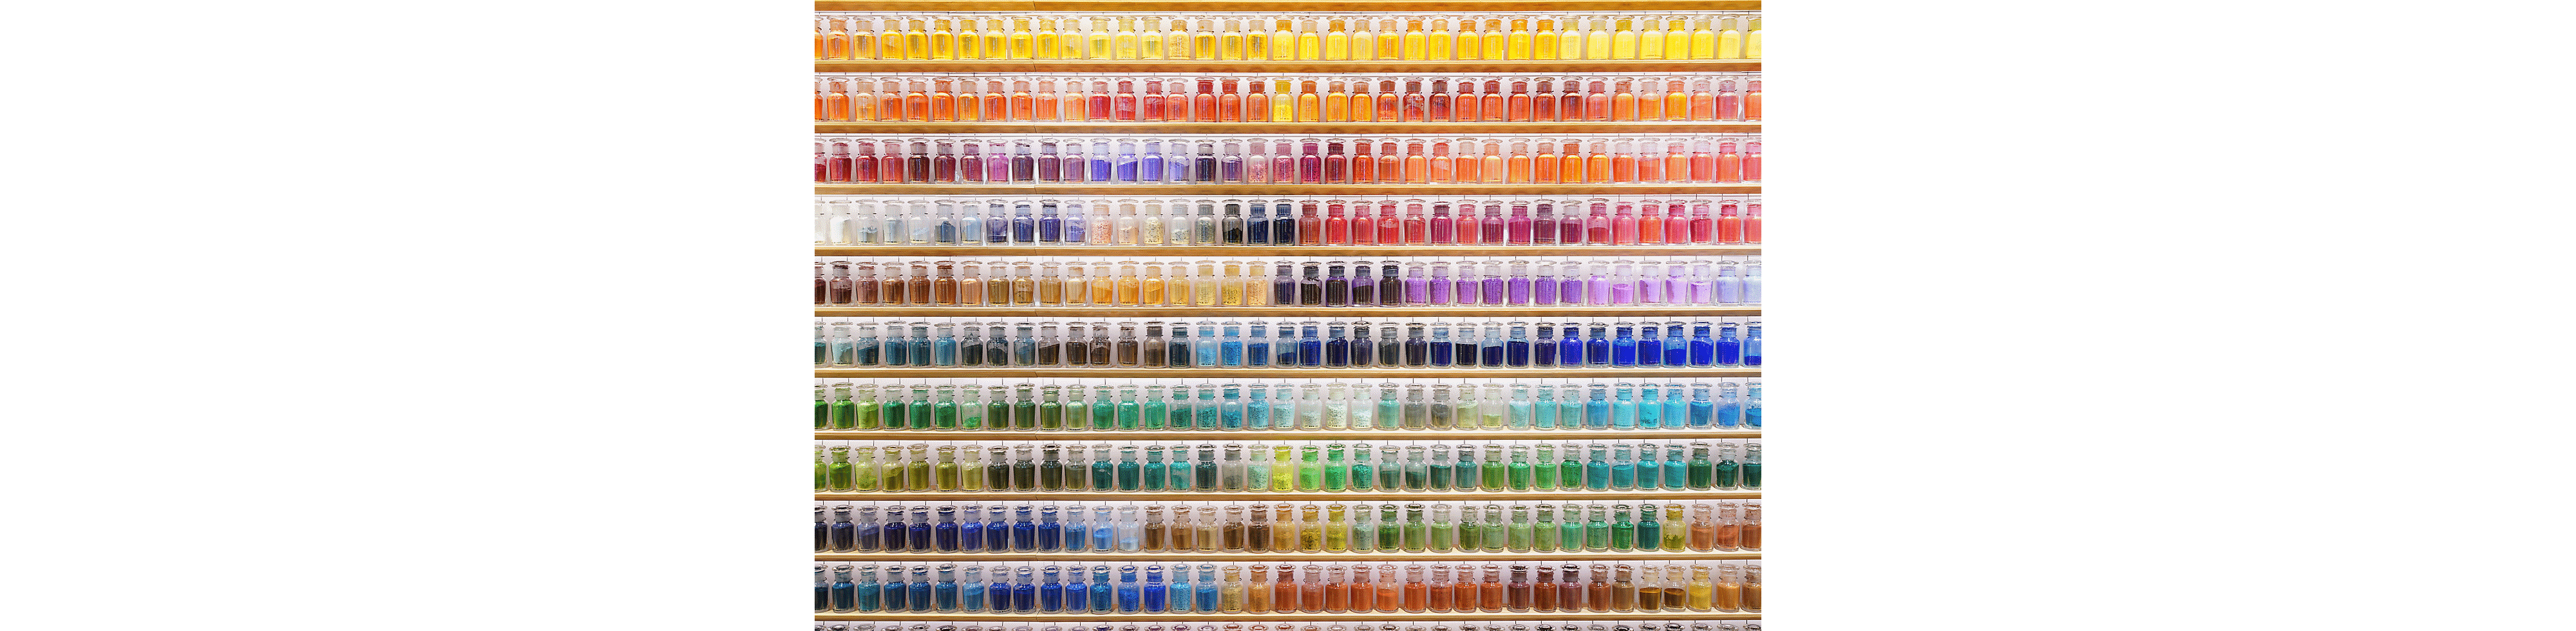 Beispielbild einer Wand voller bunter Flaschen